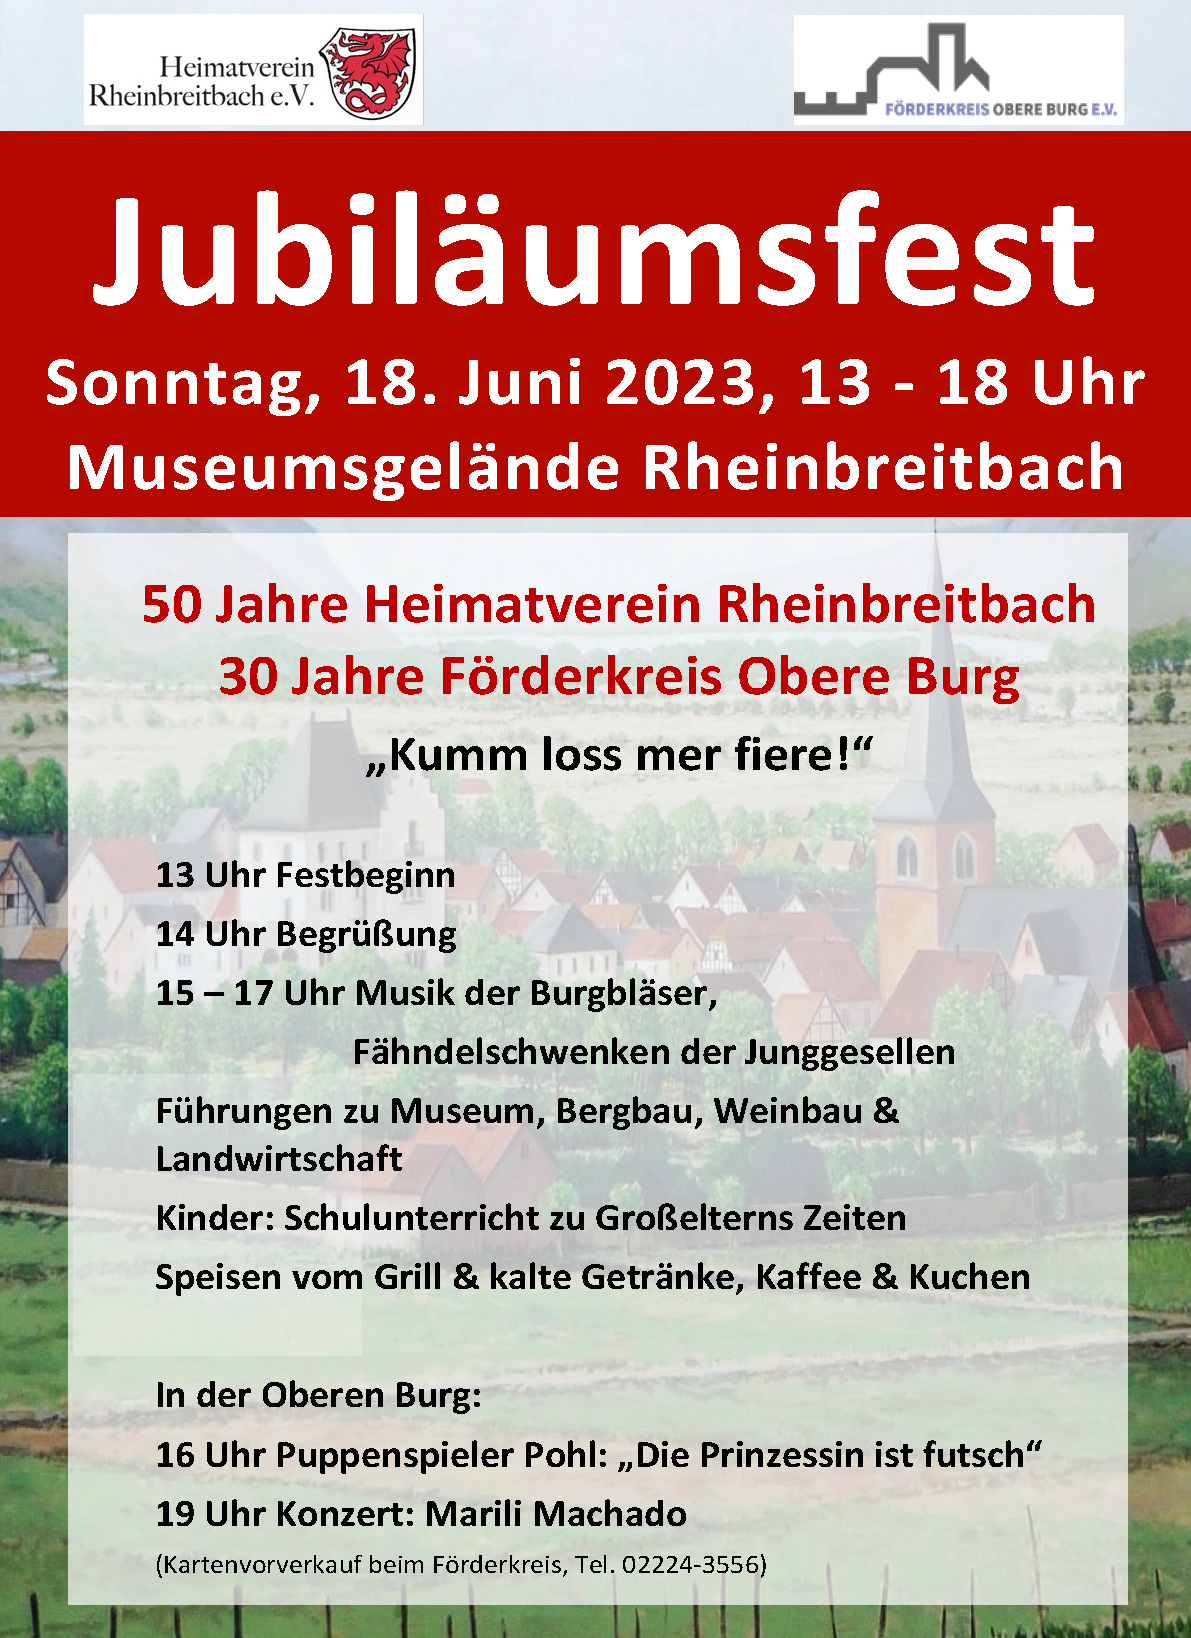 50 Jahre Heimatverein Rheinbreitbach - 30 Jahre Förderkreis Obere Burg!